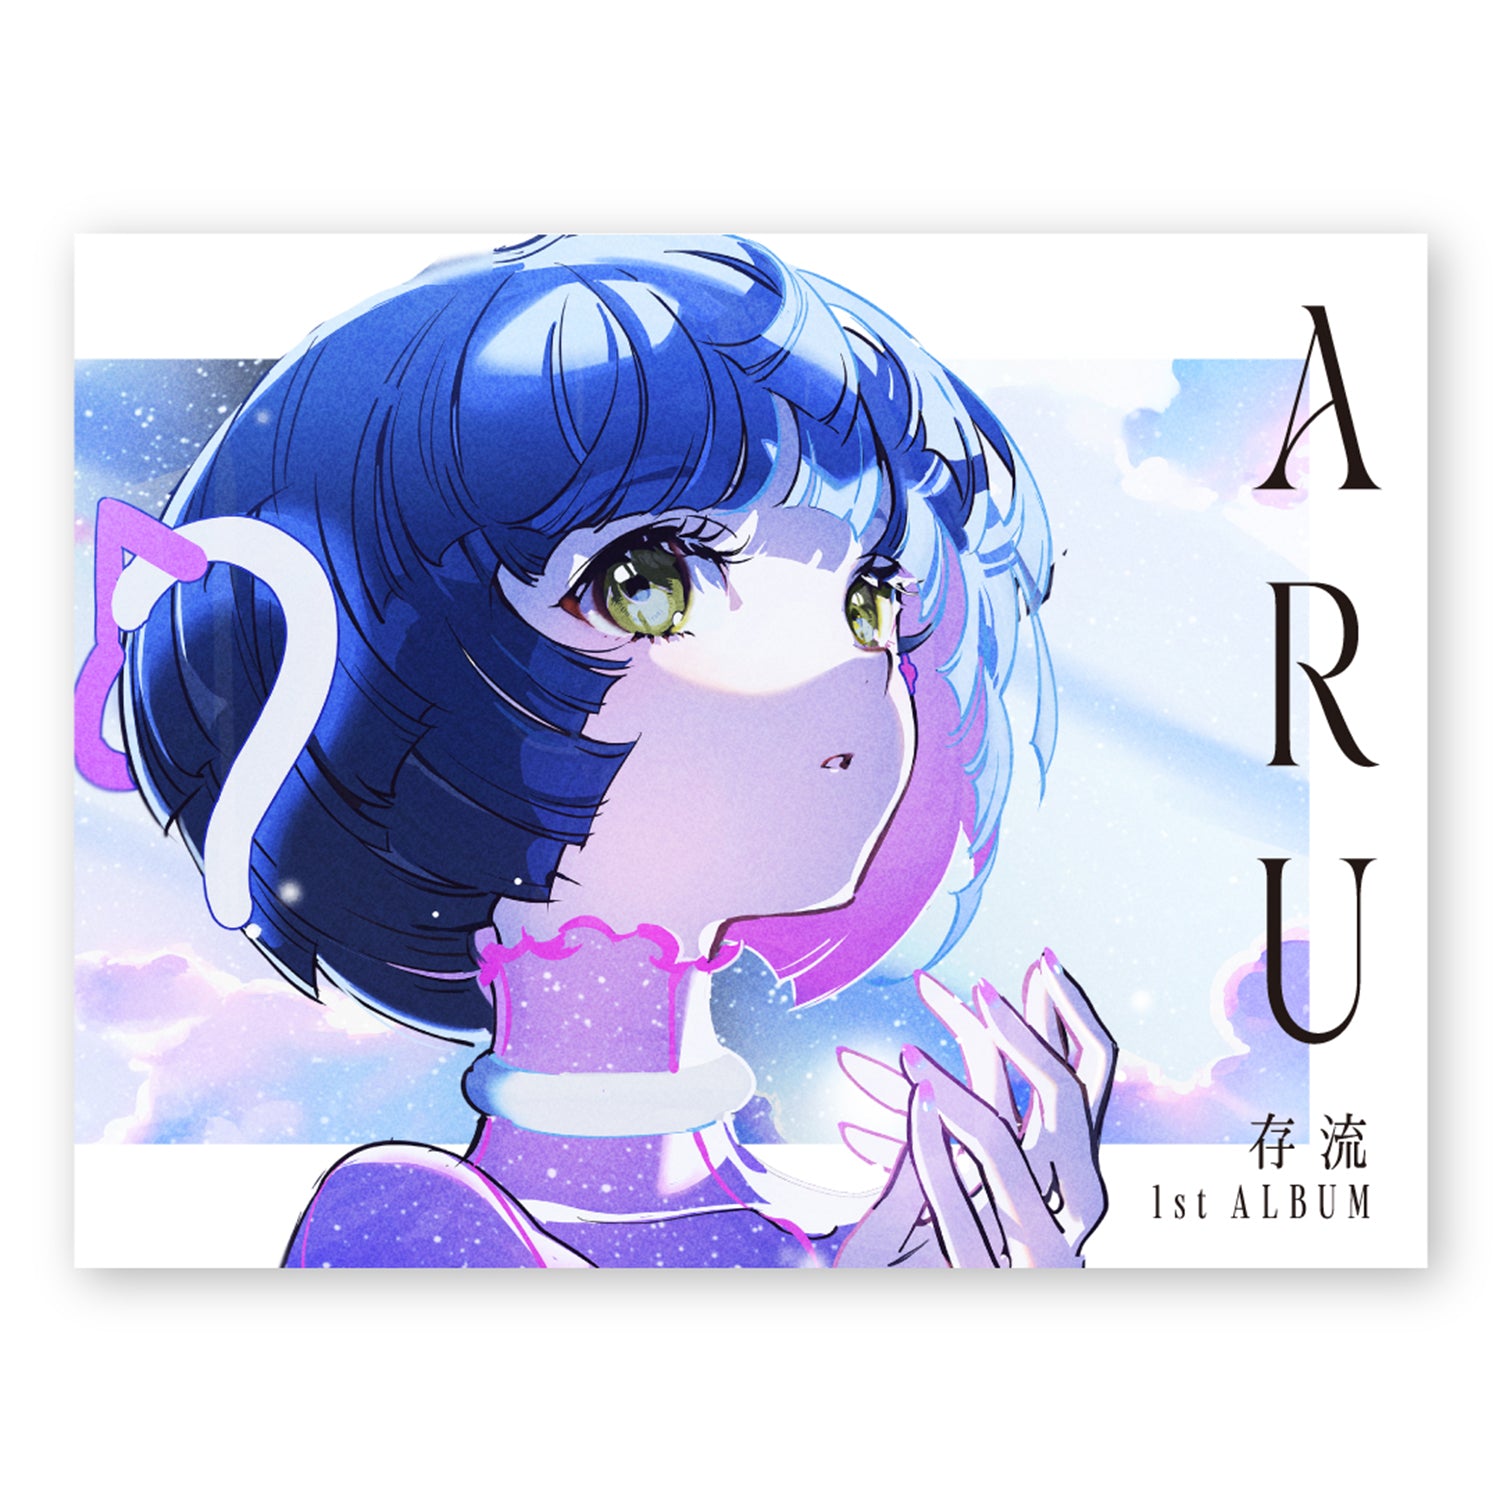 存流】1st Album「ARU」／存流・明透 1st Album「ARU」「ASU